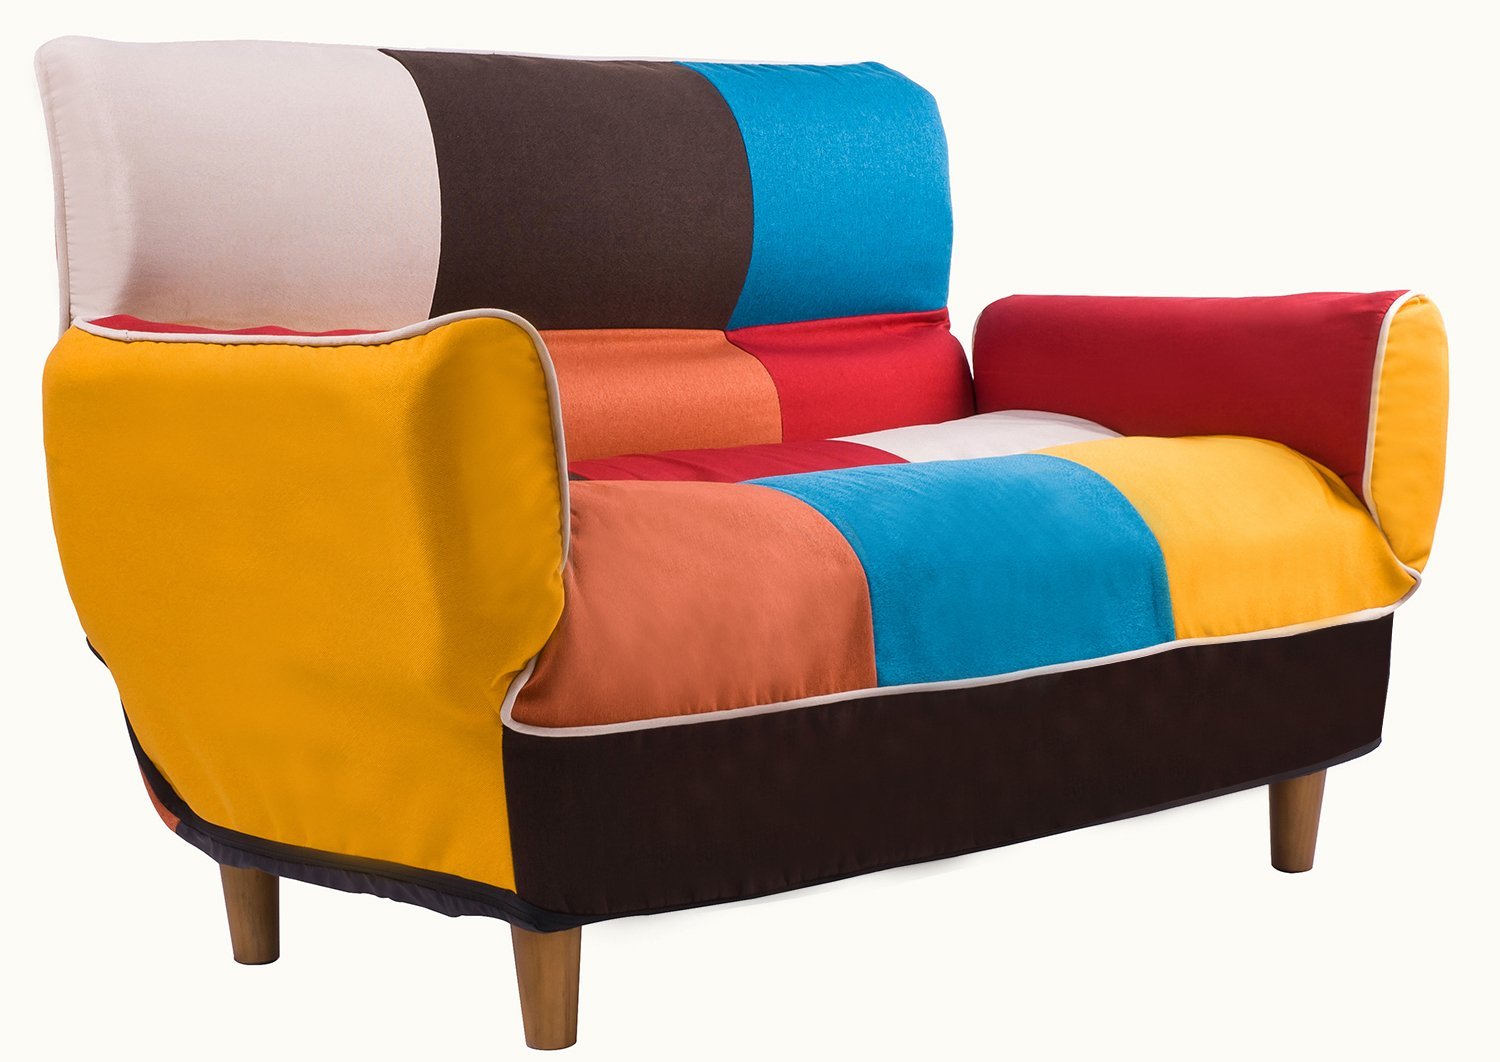 merax adjustable foldable modern leisure sofa bed